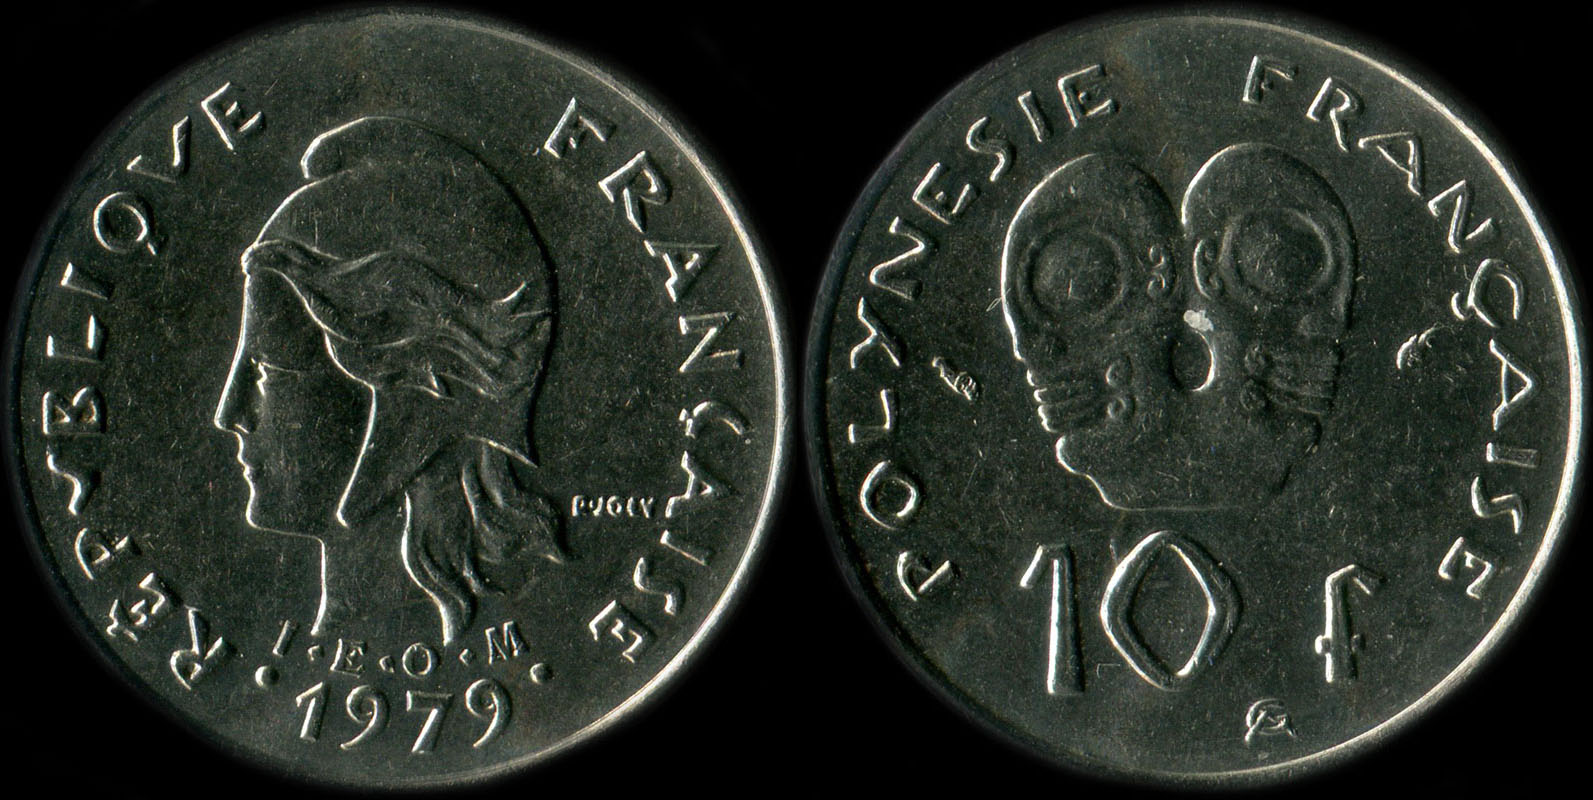 Pice de 10 francs 1979  - I.E.O.M. Polynsie franaise